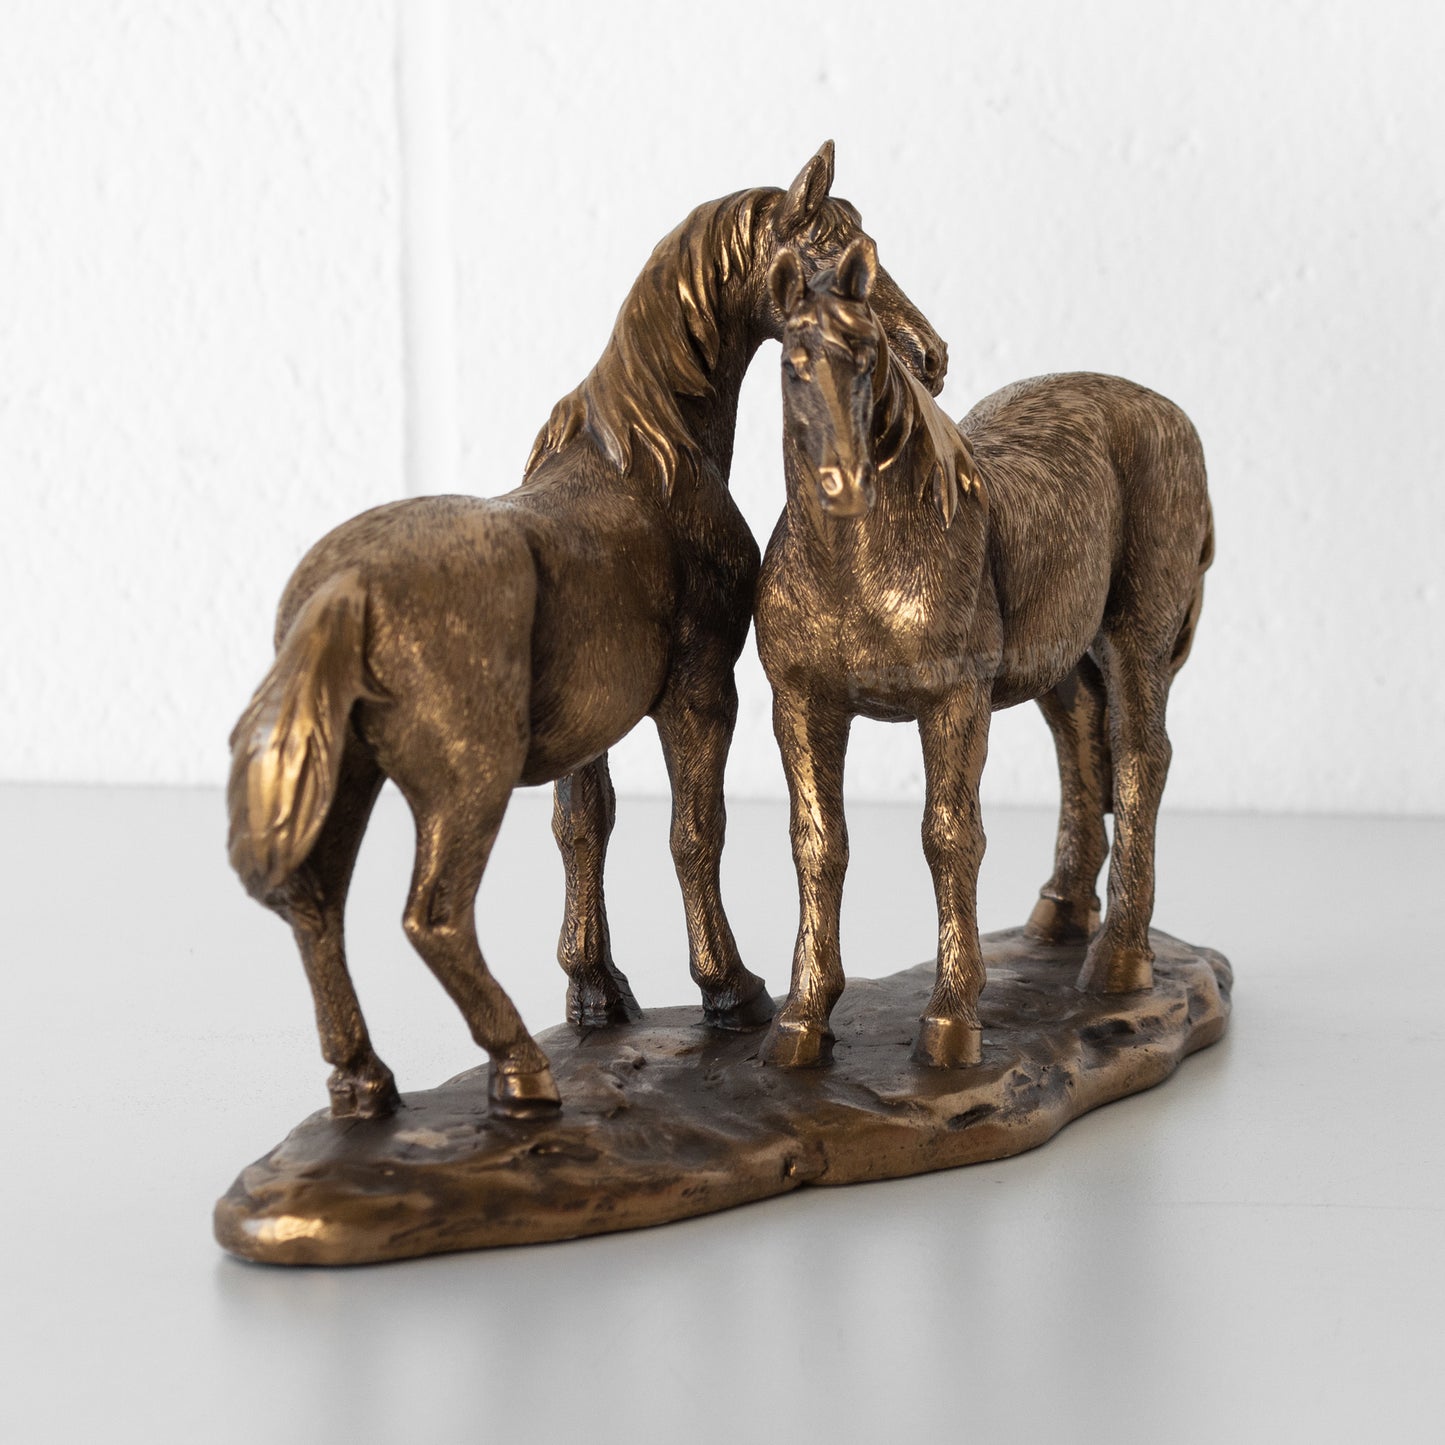 Standing Horses 24cm Long Resin Ornament